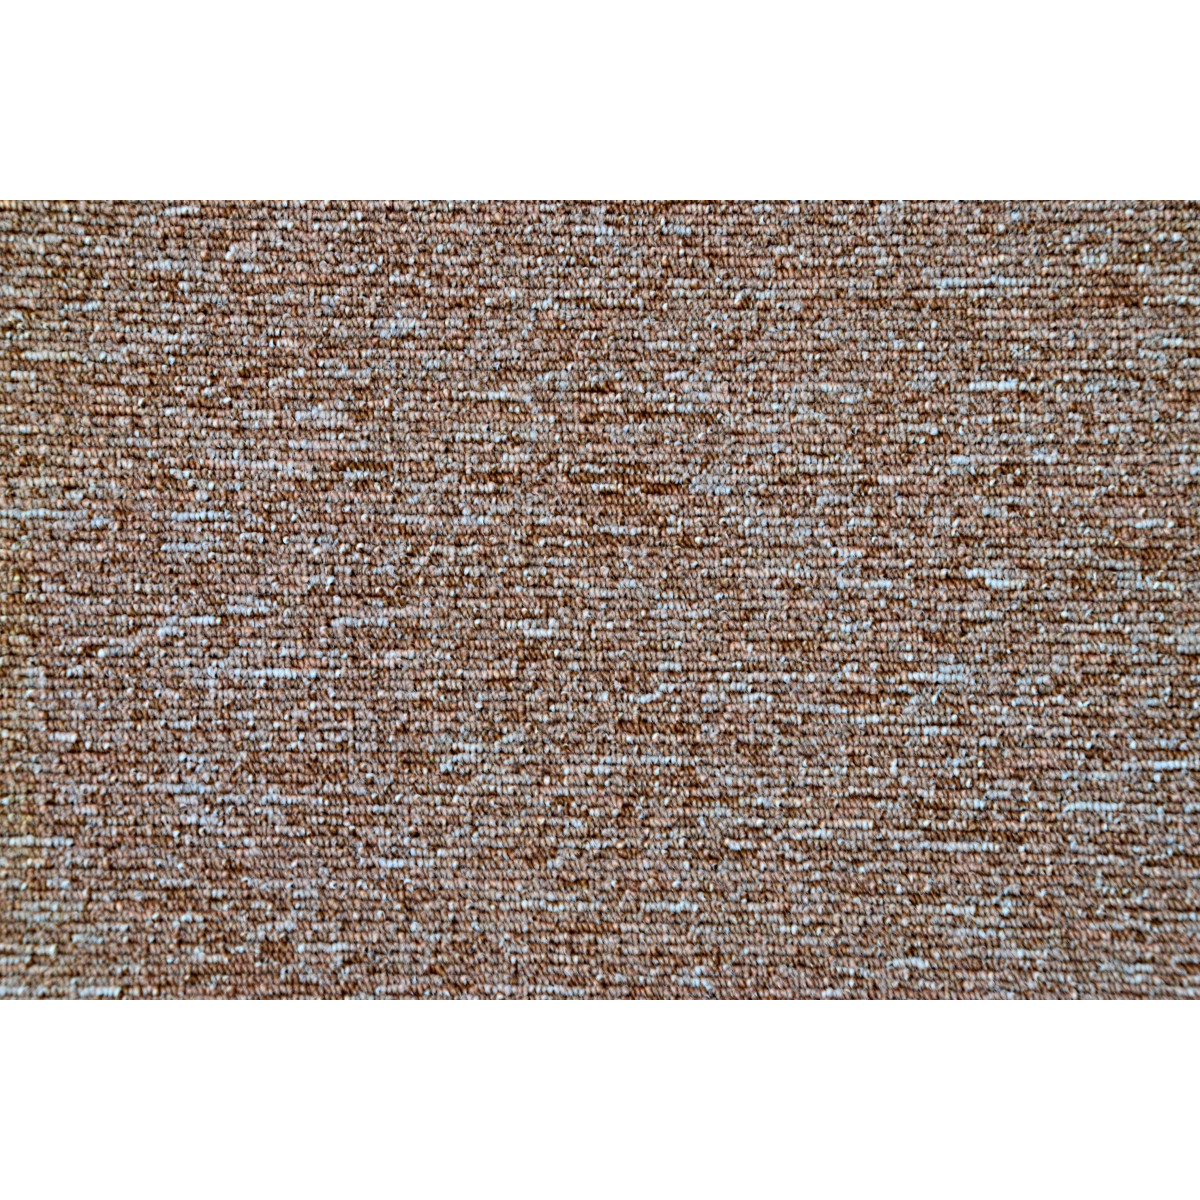 AKCE: 135x145 cm Metrážový koberec Mammut 8014 béžový, zátěžový